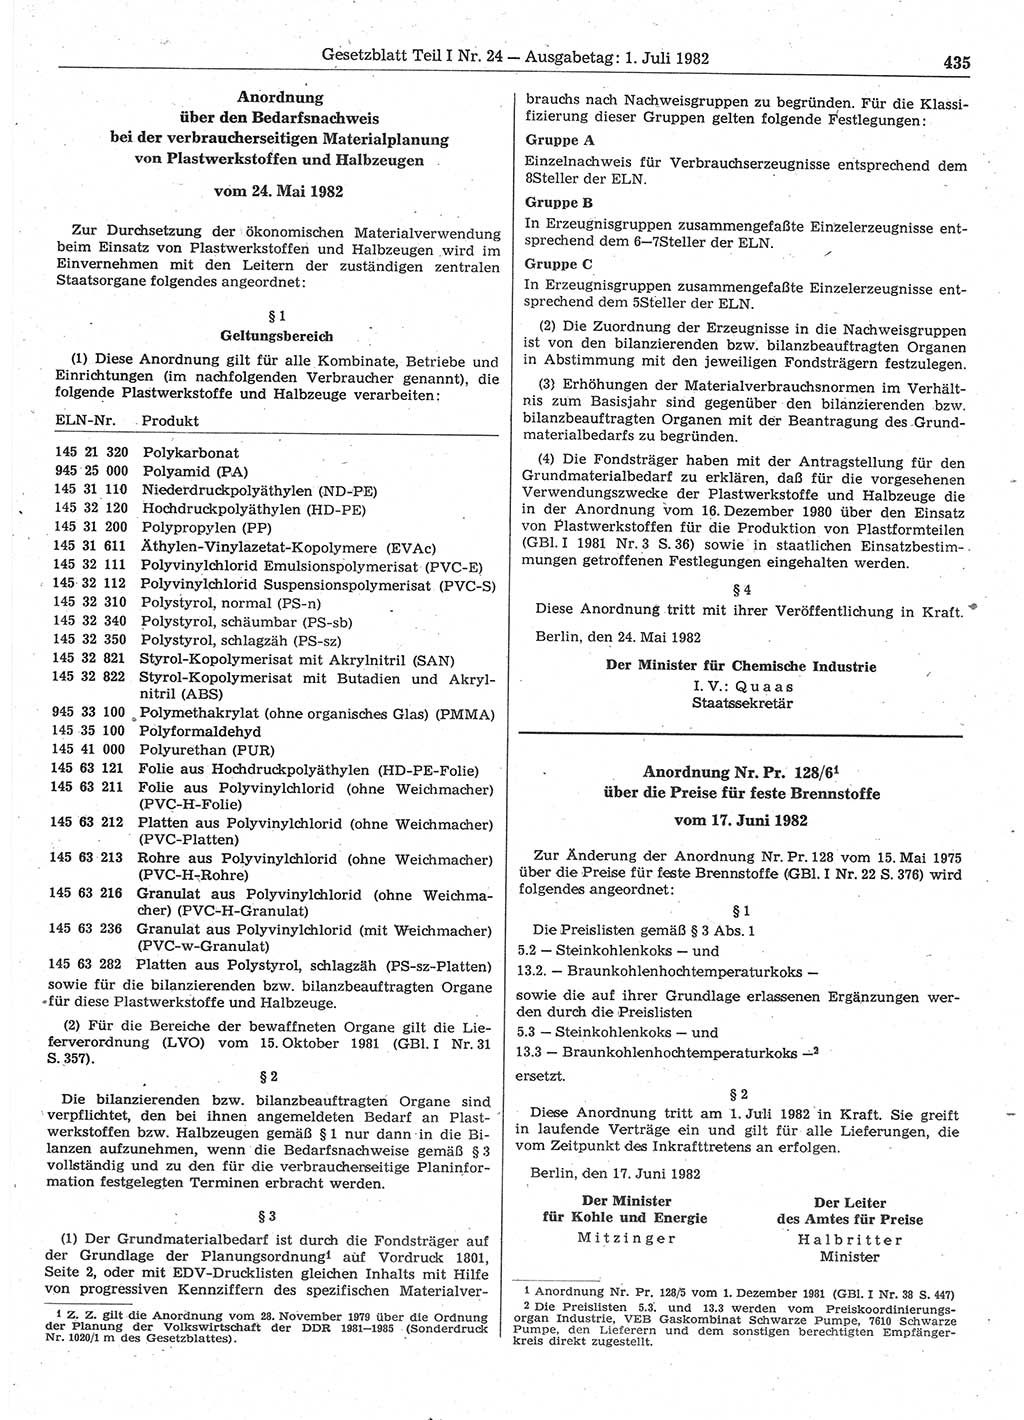 Gesetzblatt (GBl.) der Deutschen Demokratischen Republik (DDR) Teil Ⅰ 1982, Seite 435 (GBl. DDR Ⅰ 1982, S. 435)